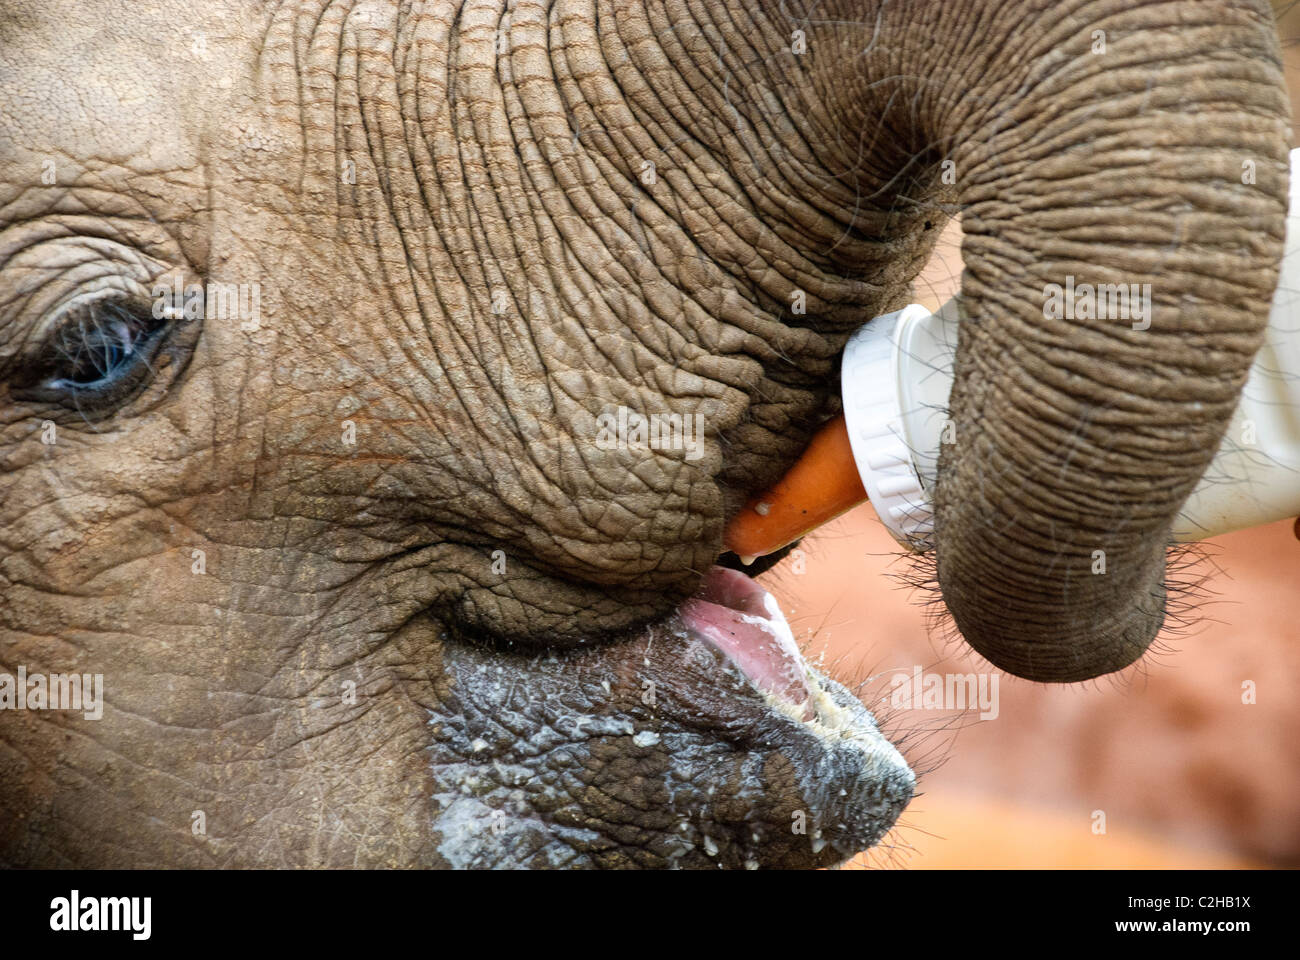 Veau de l'Eléphant d'Afrique, Loxodonta africana, boire du lait d'une bouteille, l'Orphelinat Sheldrick, Nairobi, Kenya, Afrique Banque D'Images